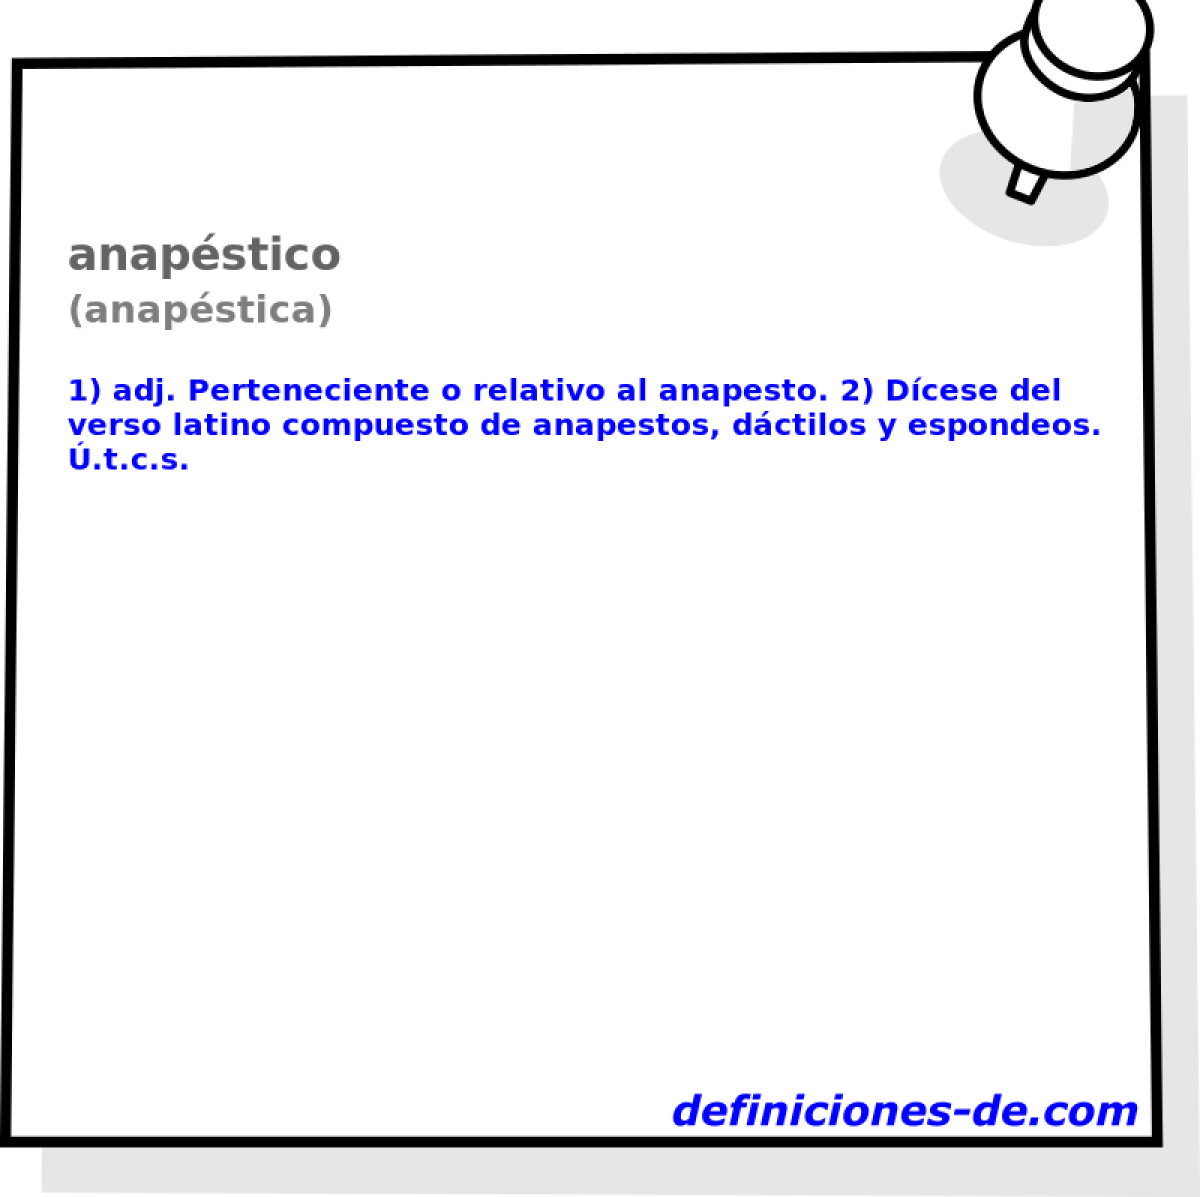 anapstico (anapstica)